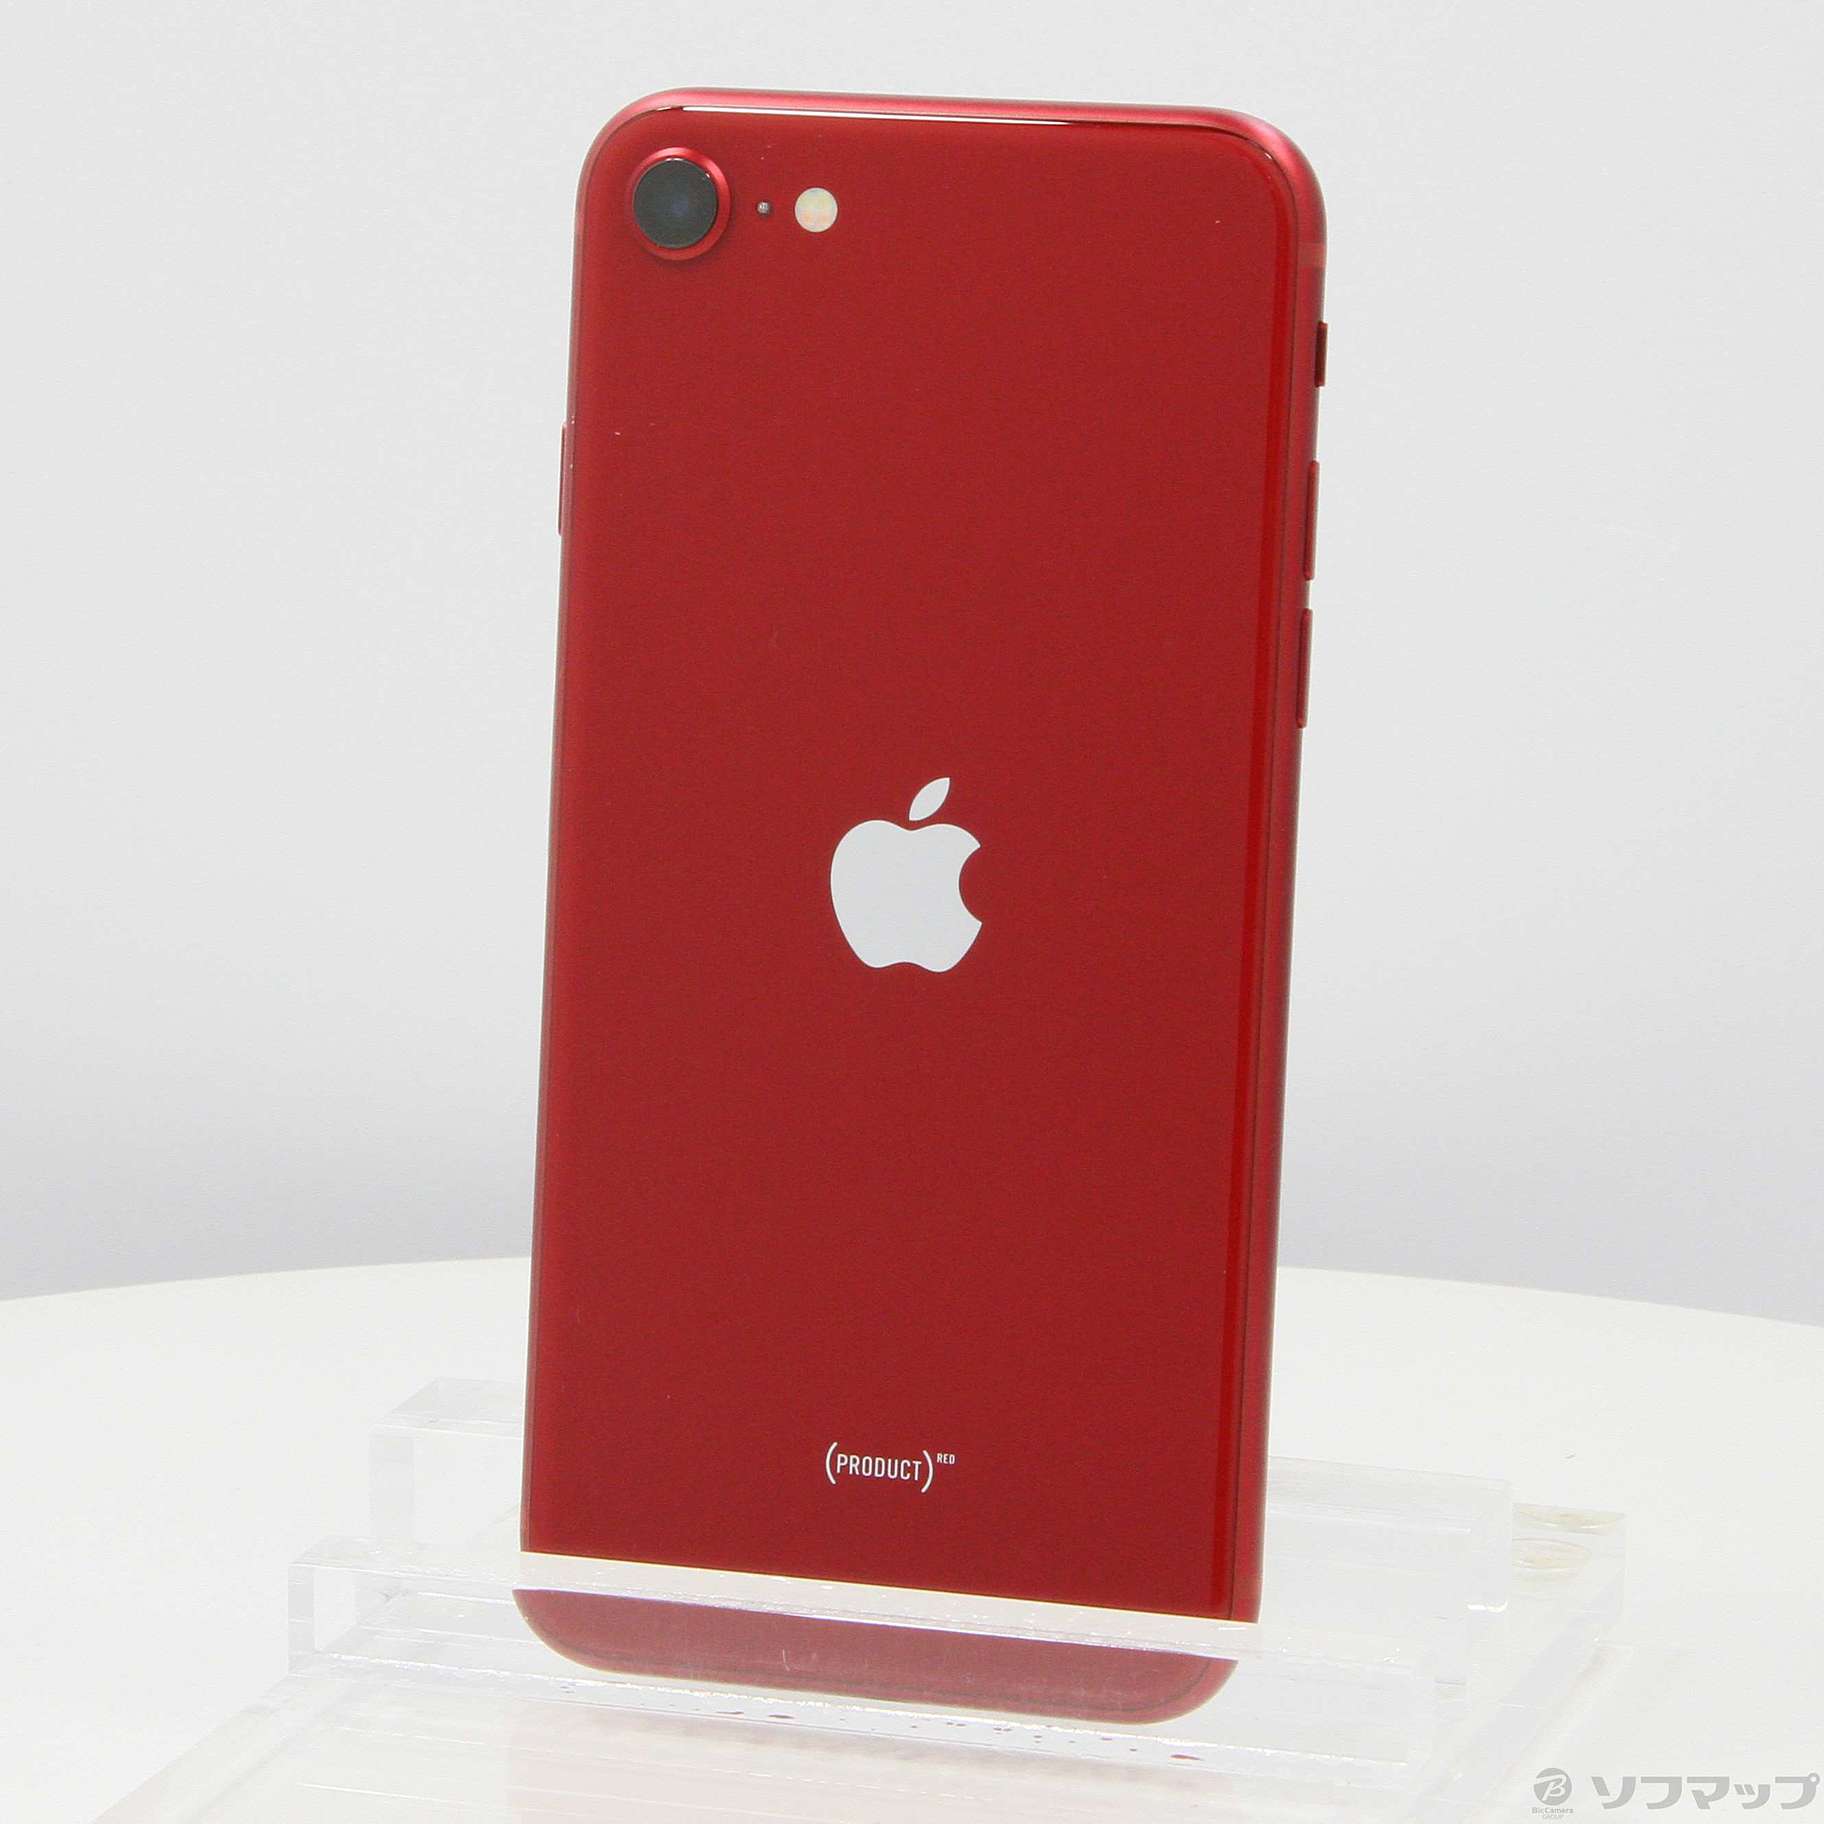 カバーをして使っていた為【美品】iPhone SE 第3世代 RED 128GB SIMフリー